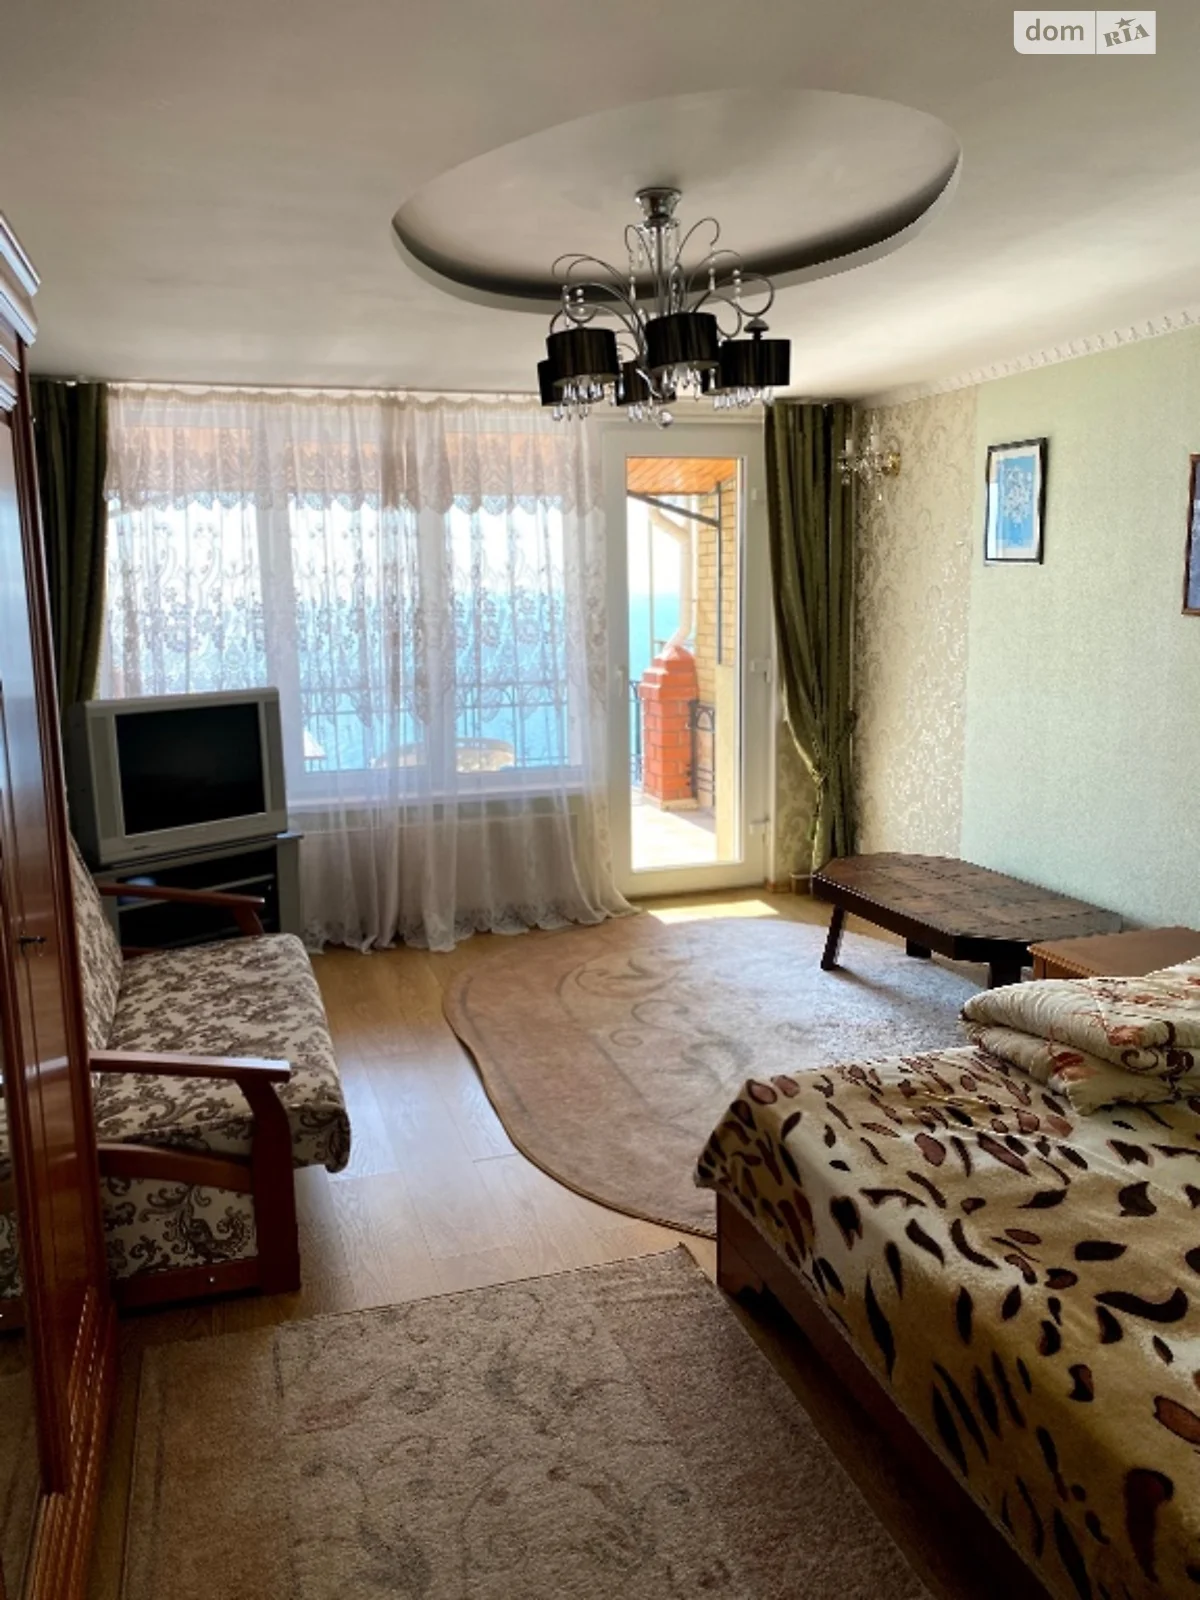 Сдается в аренду одноэтажный дом с садом, цена: 2500 грн